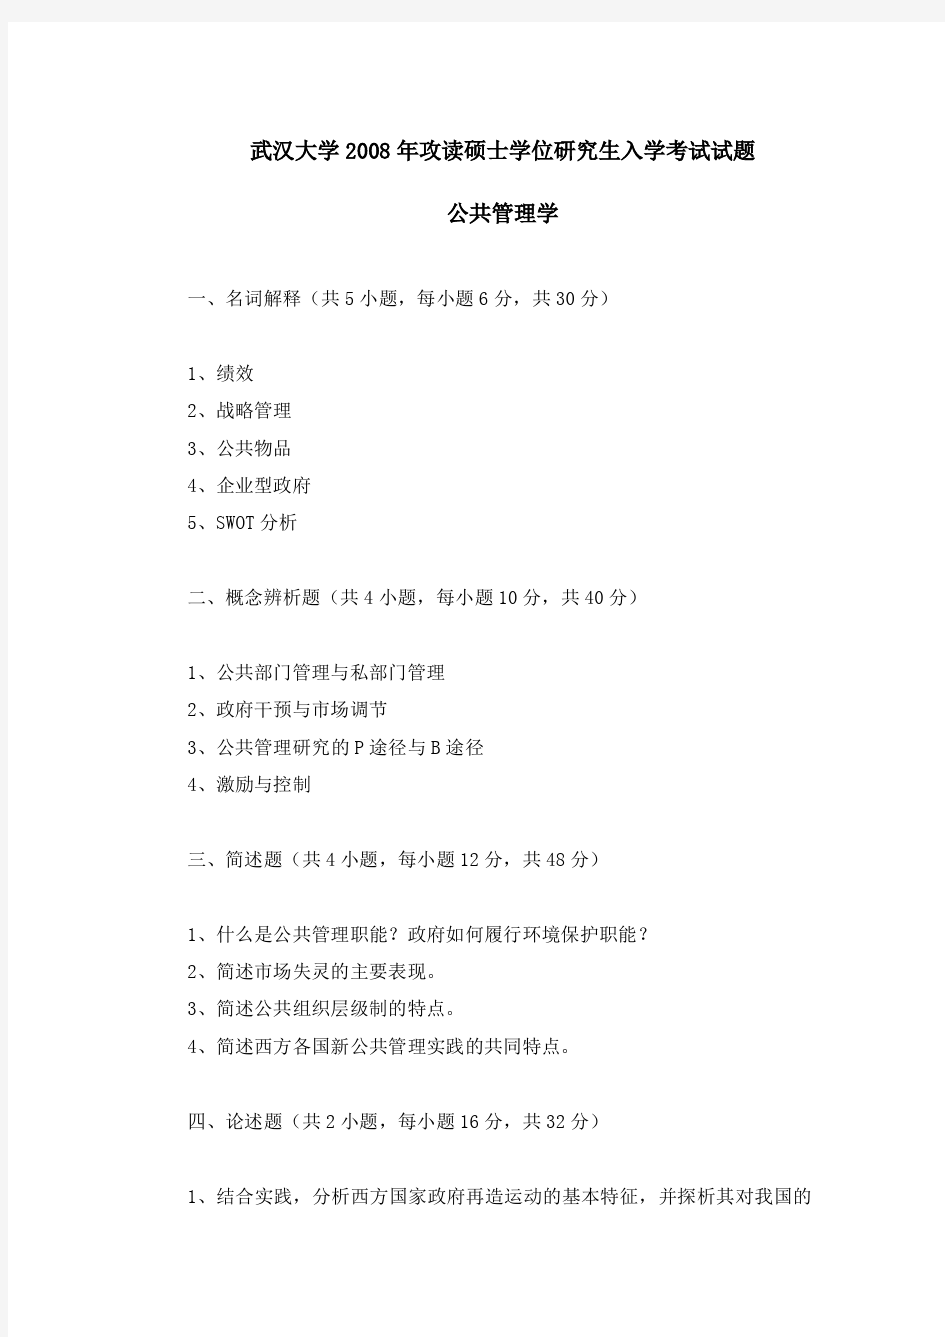 武汉大学《行政管理》考研真题汇编(2008-2014年)